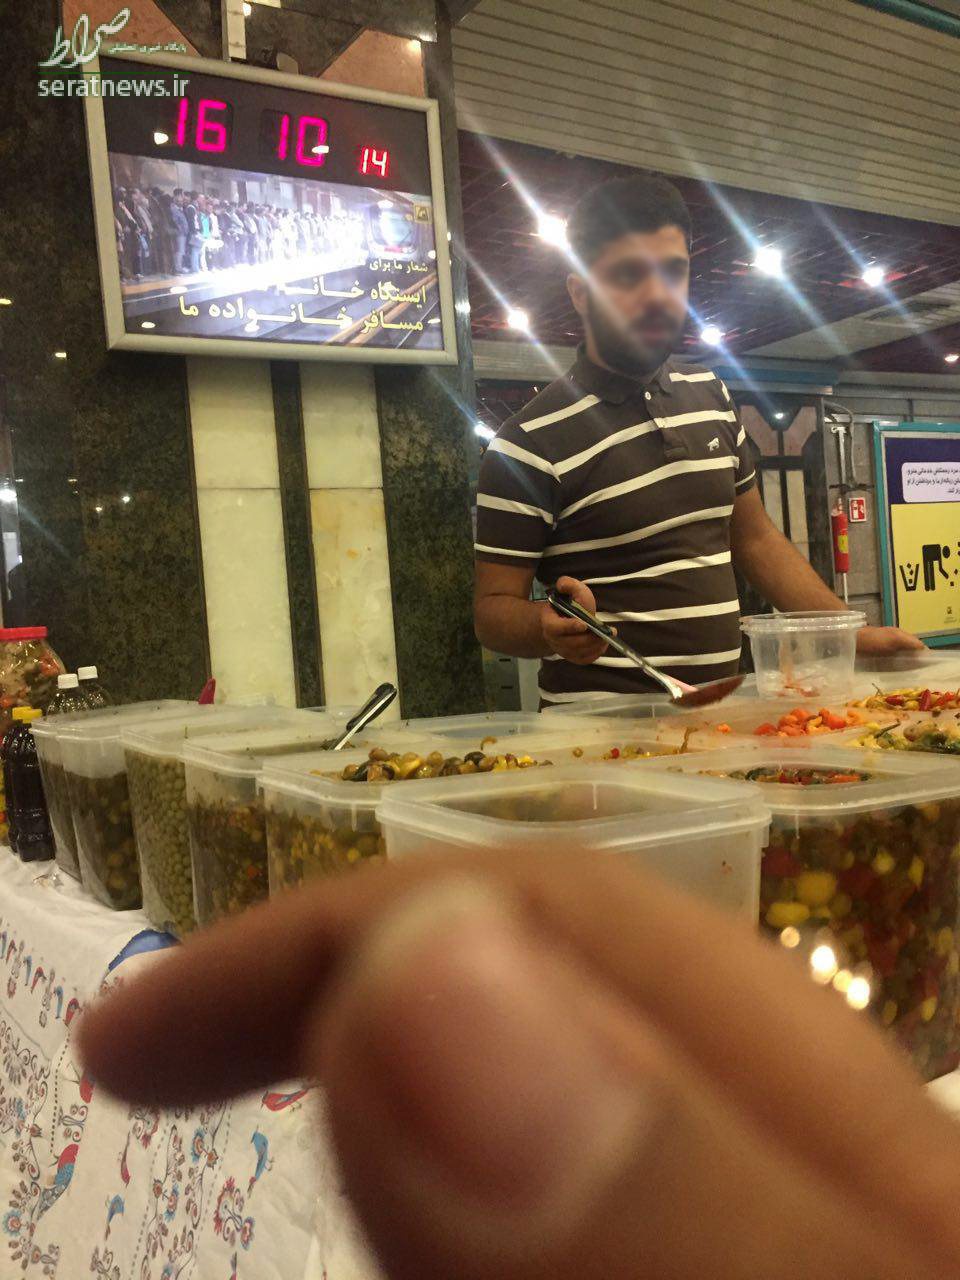 متروی تهران چگونه به بازار شام تبدیل شد؟/ از ترشی و باقلوا تا رژ لب و مانتو در ایستگاه های مترو به صورت قانونی!/ مسئولین نظارتی و مدیران بهداشت در خواب مصلحتی! + فیلم و تصاویر